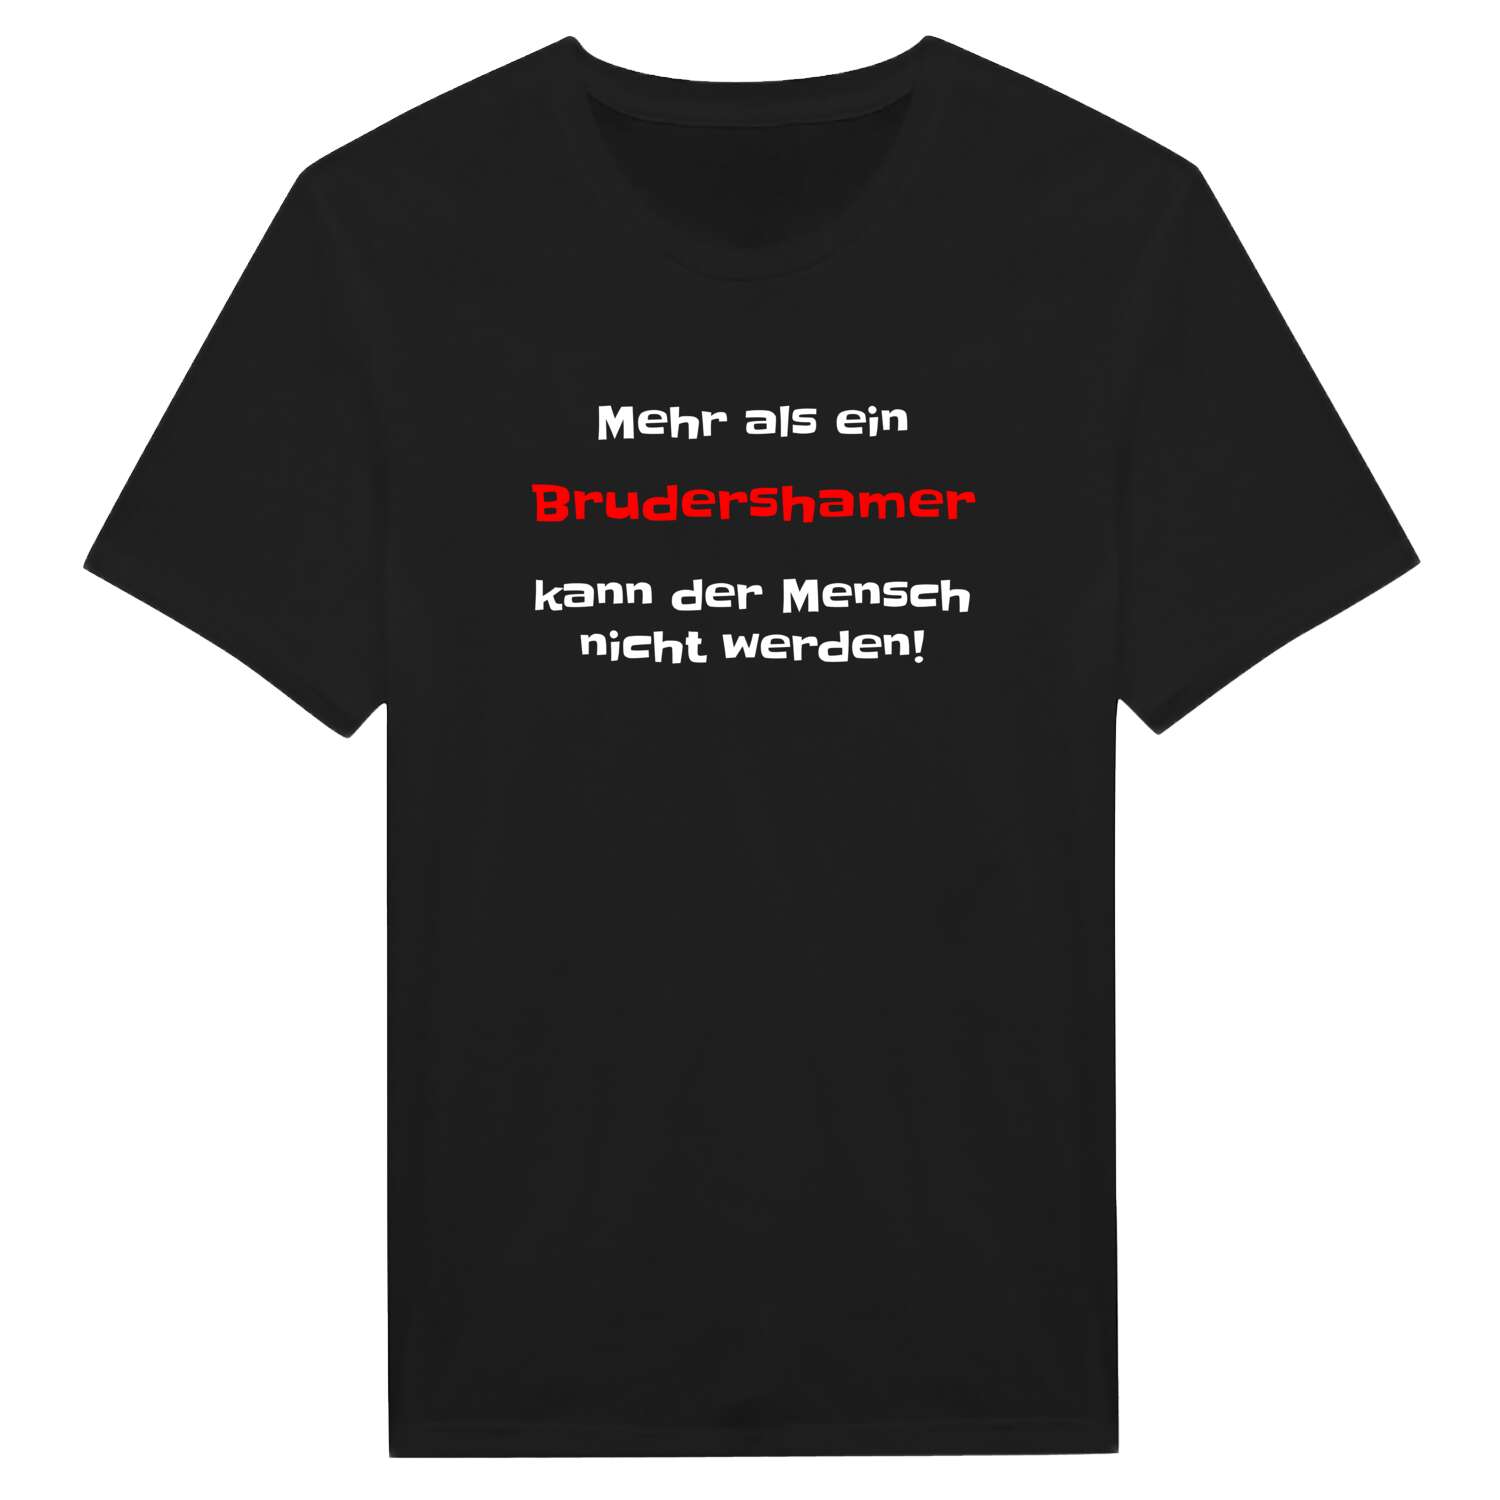 Brudersham T-Shirt »Mehr als ein«